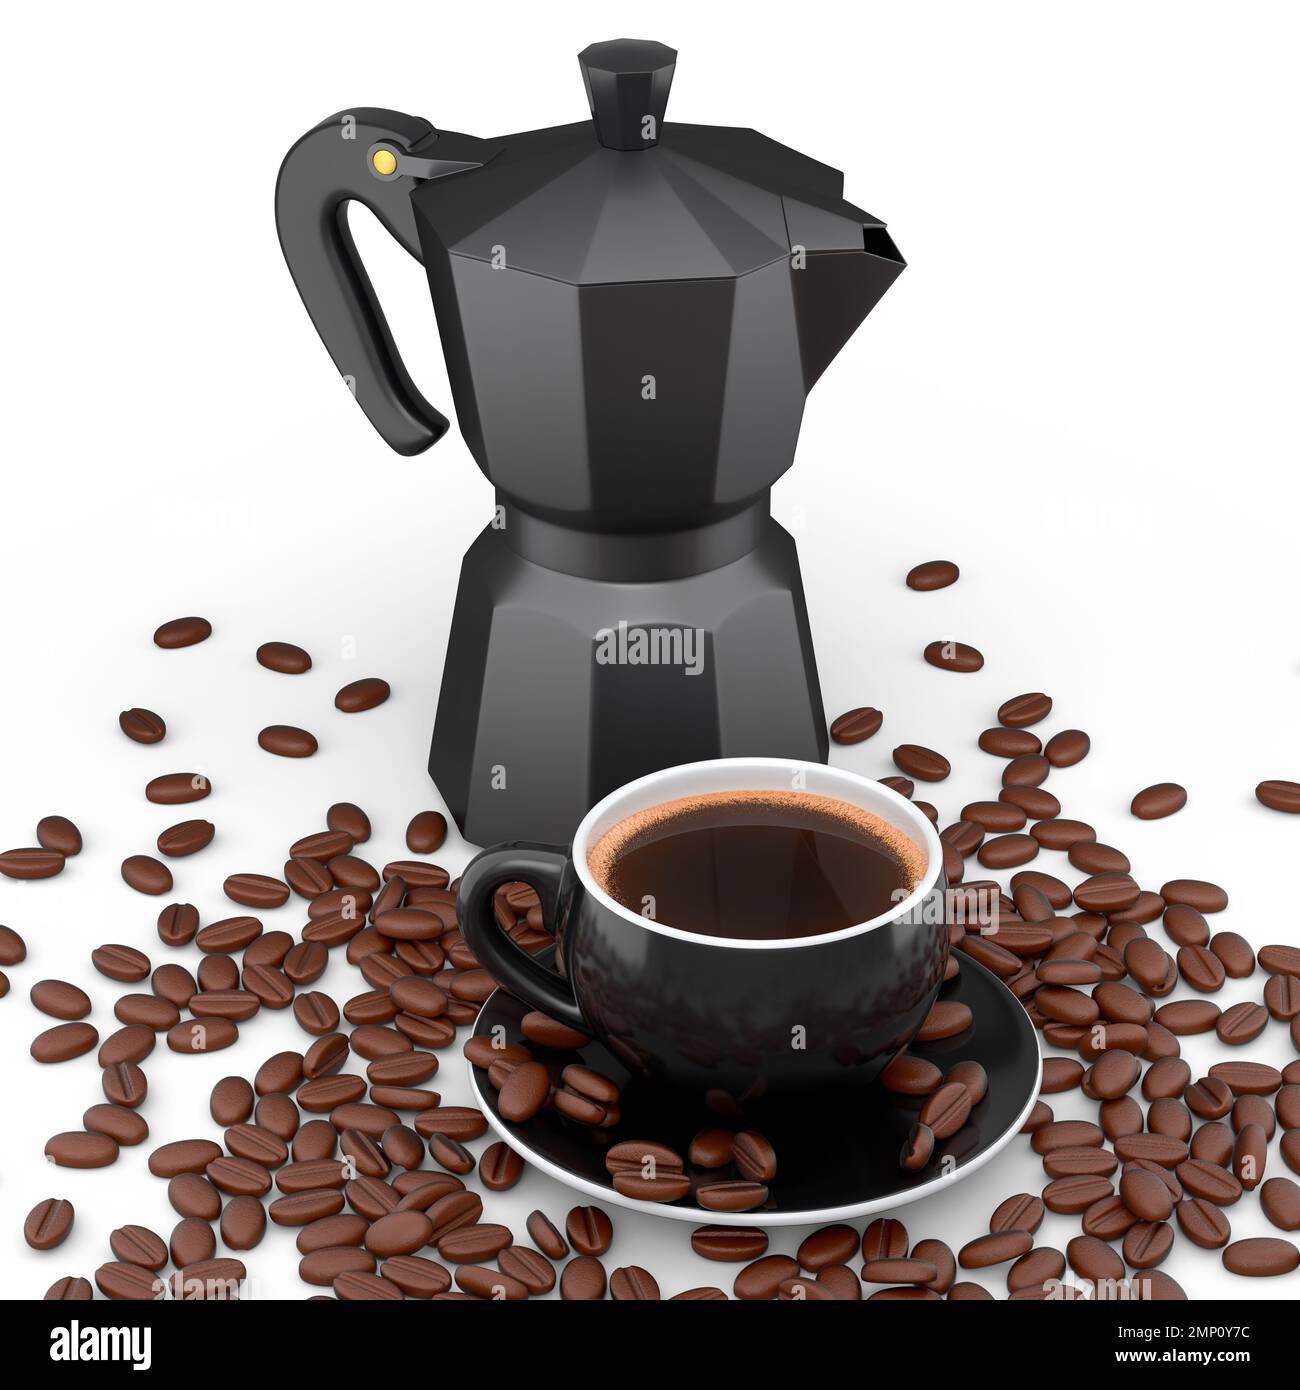 Với máy pha cà phê kiểu Moka Ý và cốc cà phê sứ, bạn sẽ có cơ hội thưởng thức ly cà phê đậm đà, thơm ngon ngay tại nhà. Với một thiết kế độc đáo kết hợp với cốc sứ sang trọng, bạn sẽ cảm nhận được sự khác biệt và đẳng cấp.